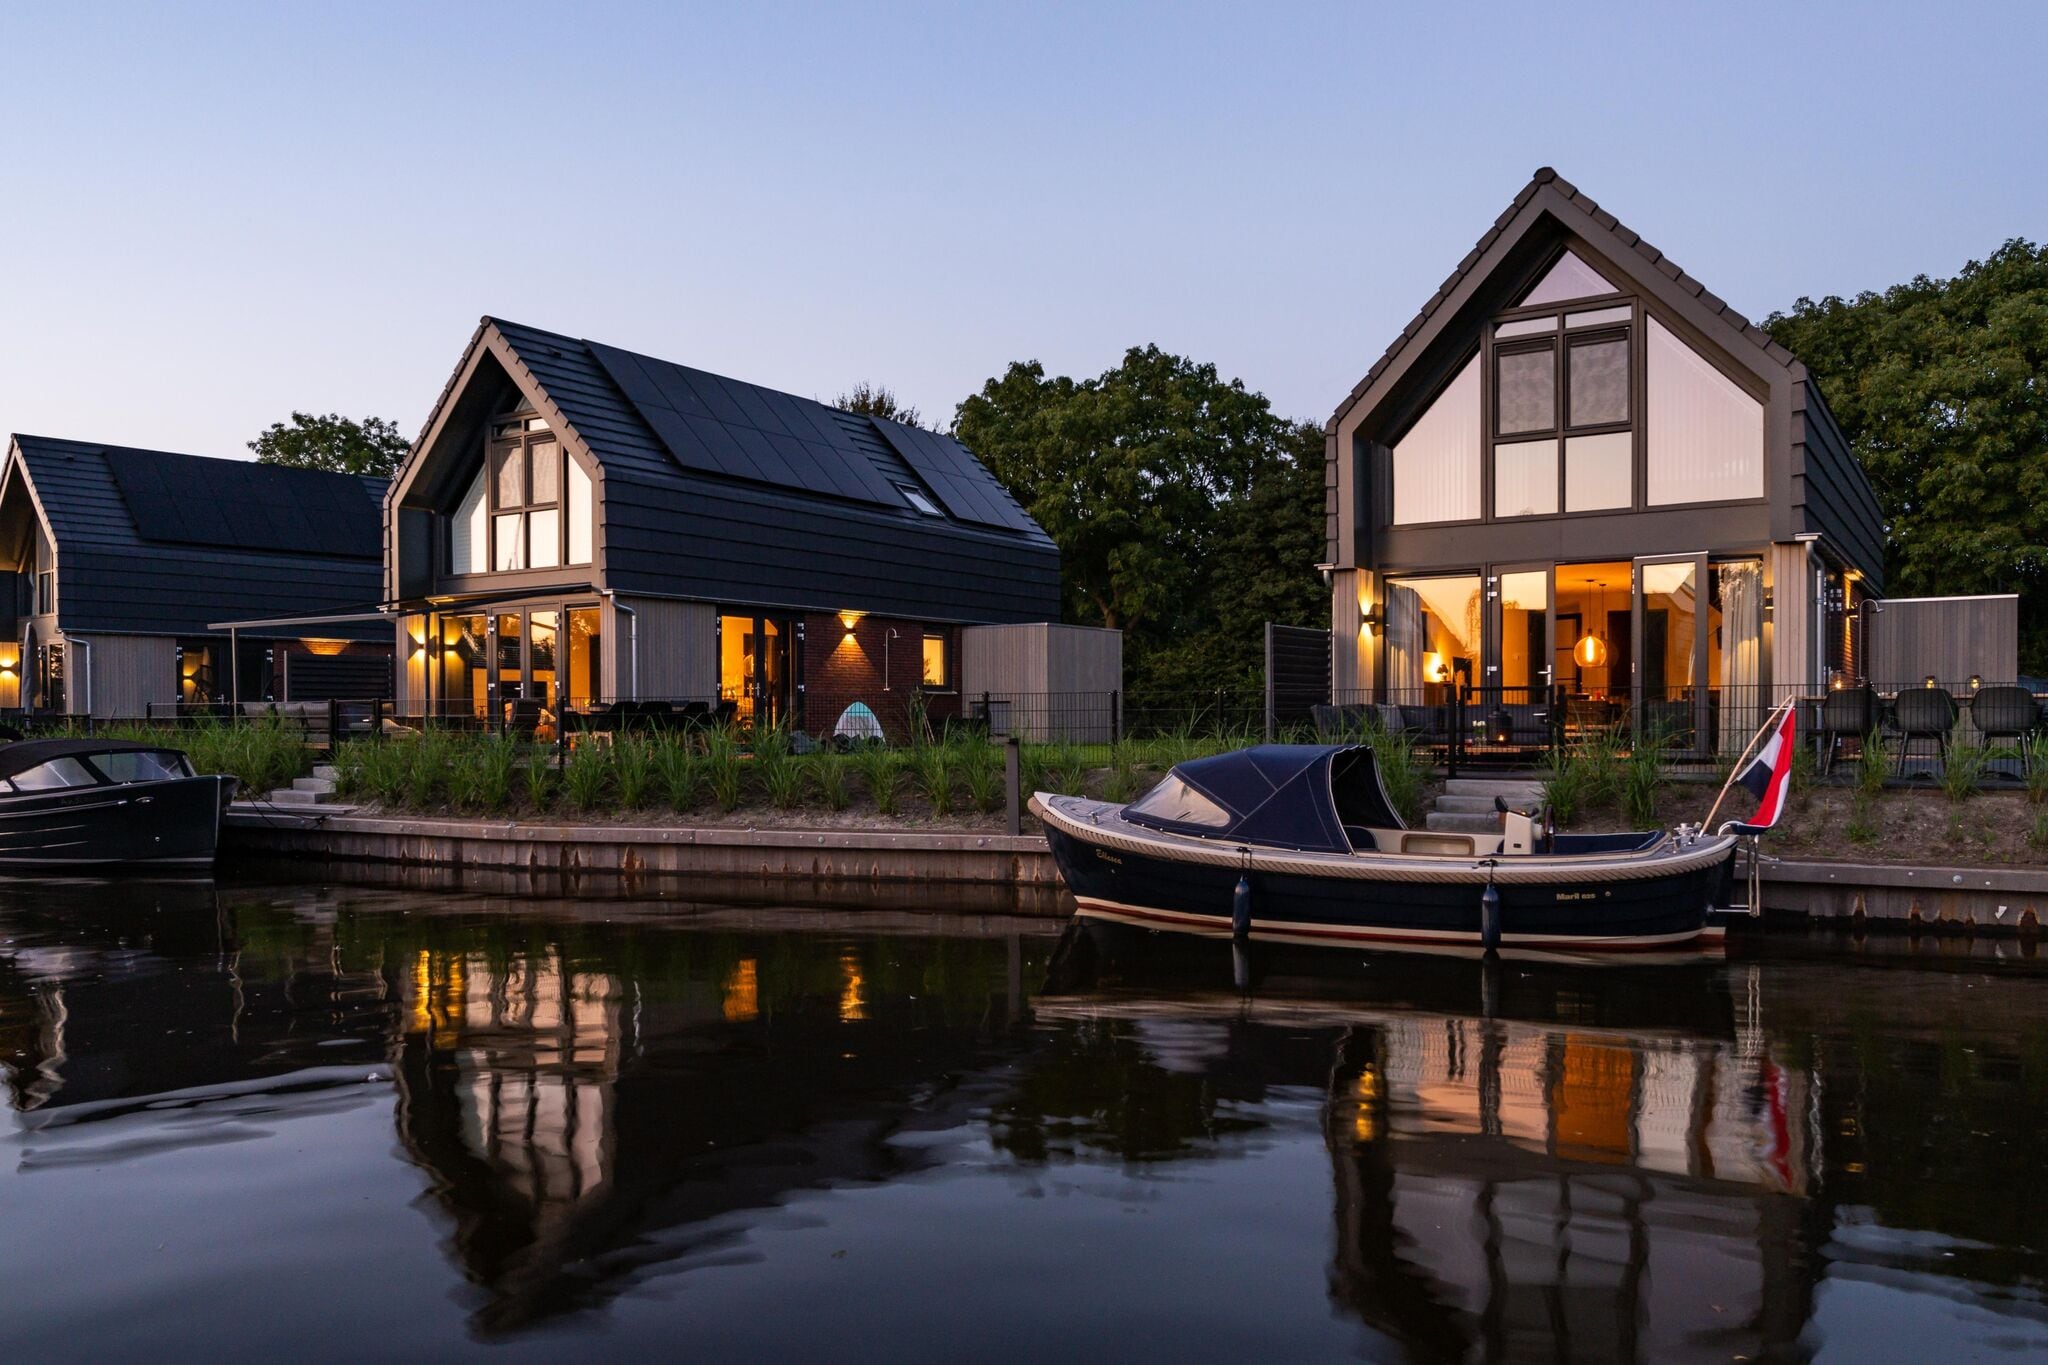 Maison de vacances luxueuse avec terrasse privée au bord de l'eau